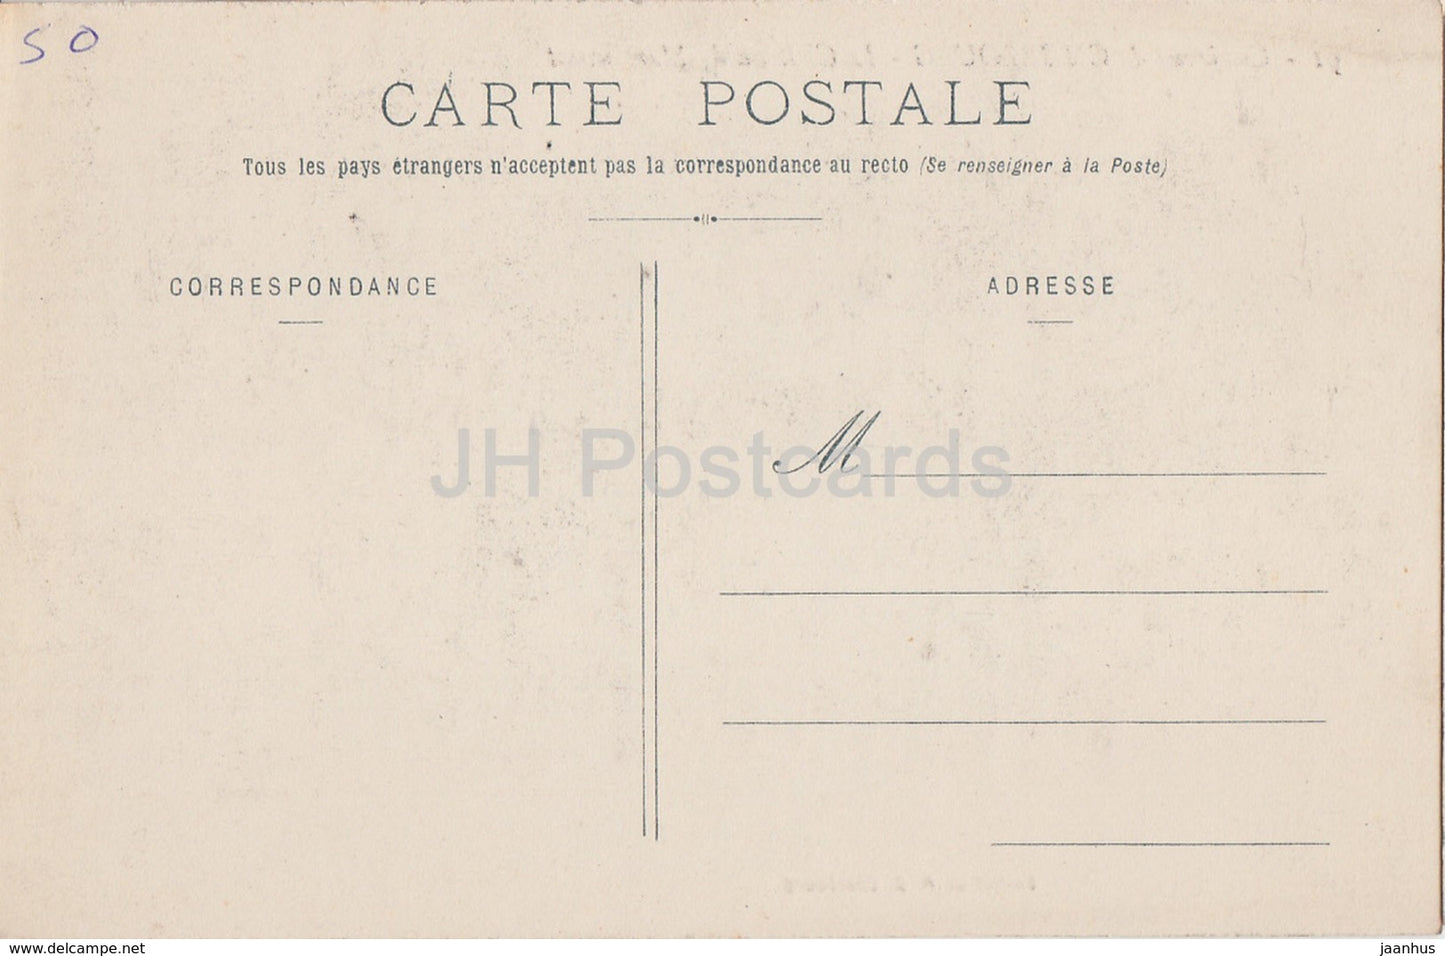 Environs de Cherbourg - Le Château de Martinvast - château - carte postale ancienne - France - inutilisée